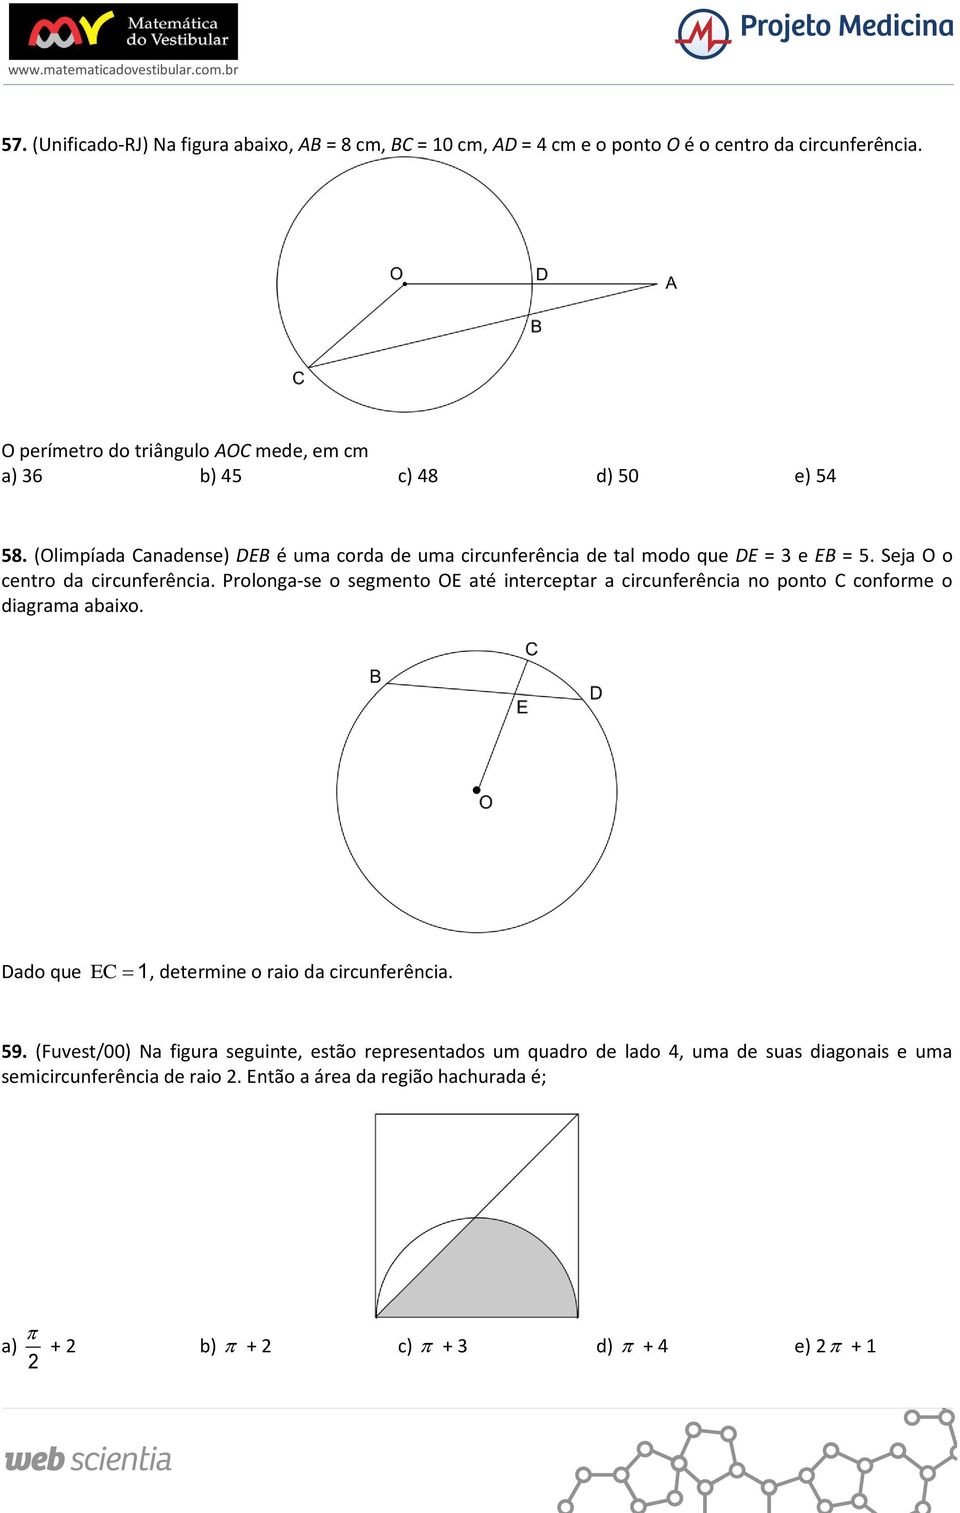 Seja O o centro da circunferência. Prolonga-se o segmento OE até interceptar a circunferência no ponto C conforme o diagrama abaixo.